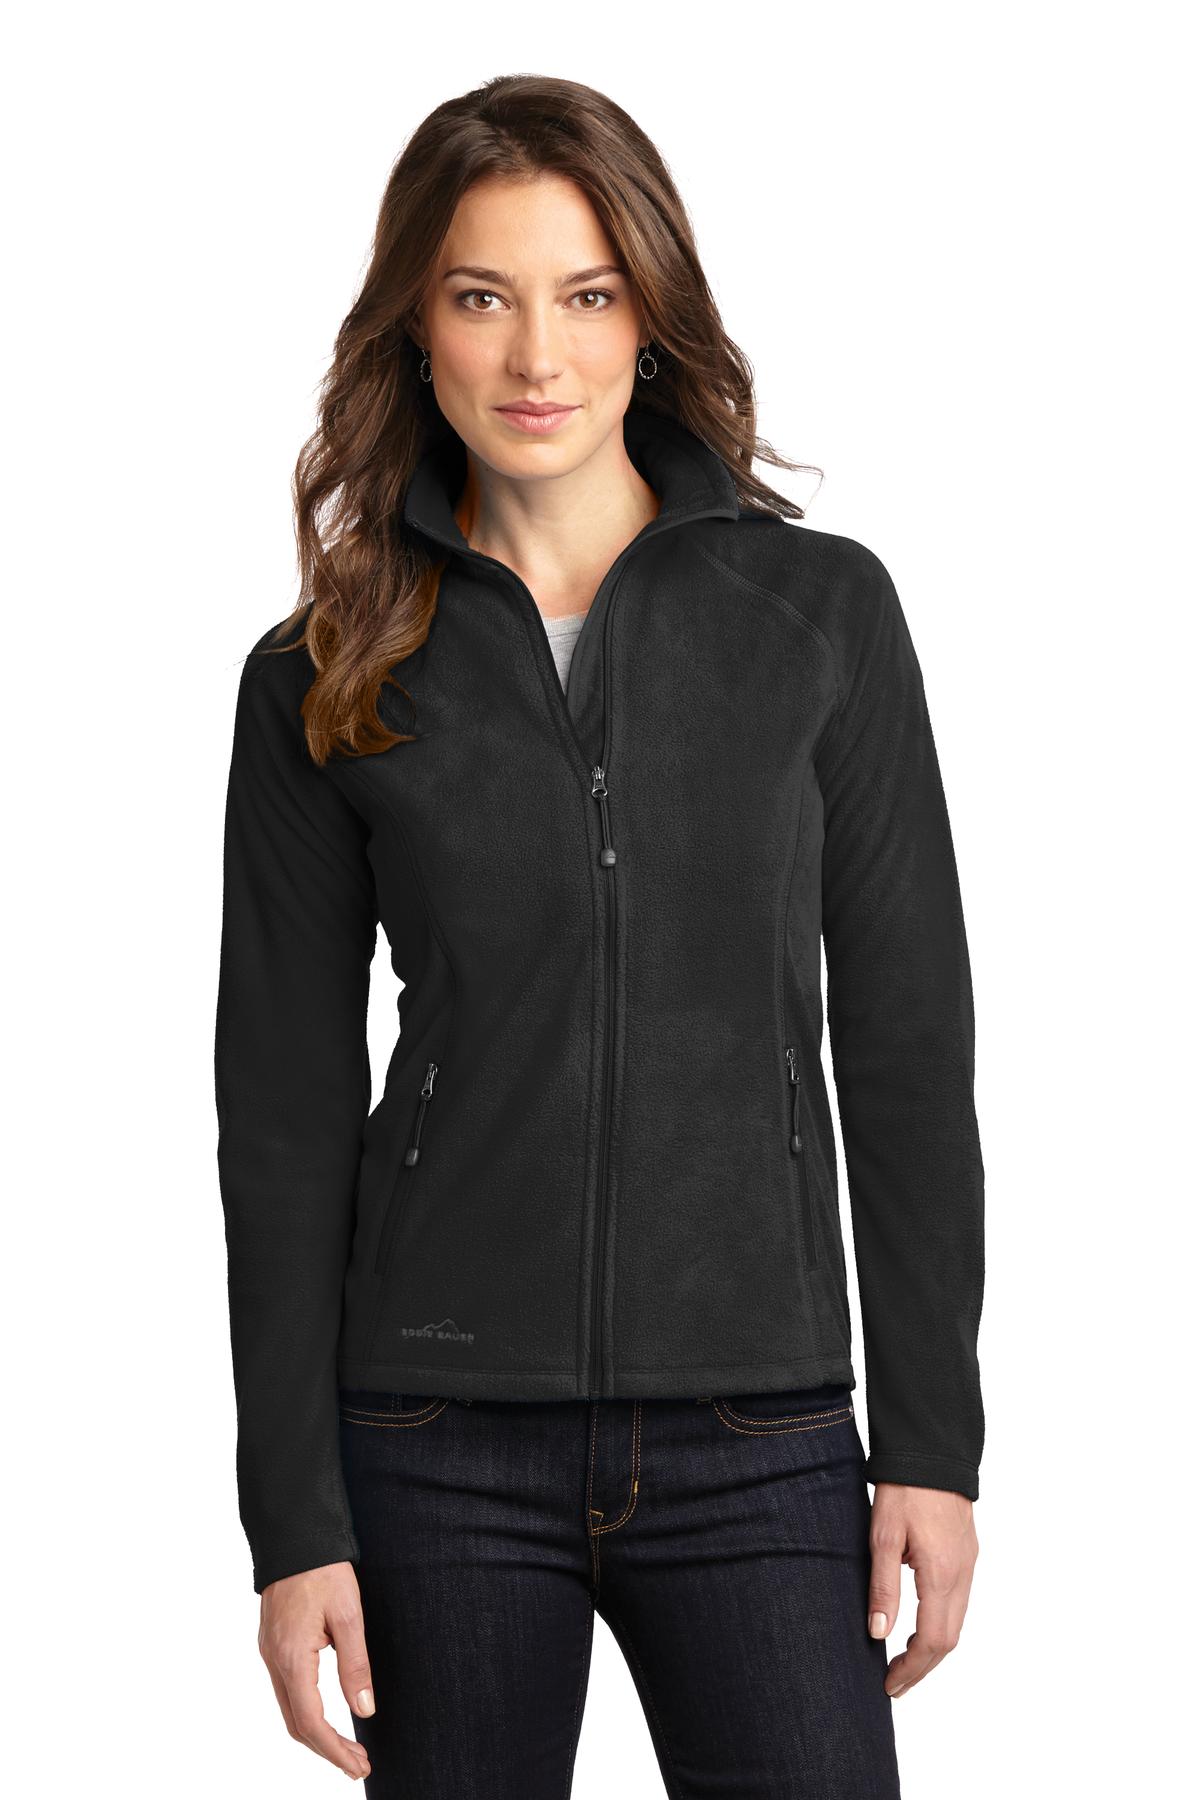 Buy Eddie Bauer® Ladies Full-Zip Microfleece Jacket. - Online at Best